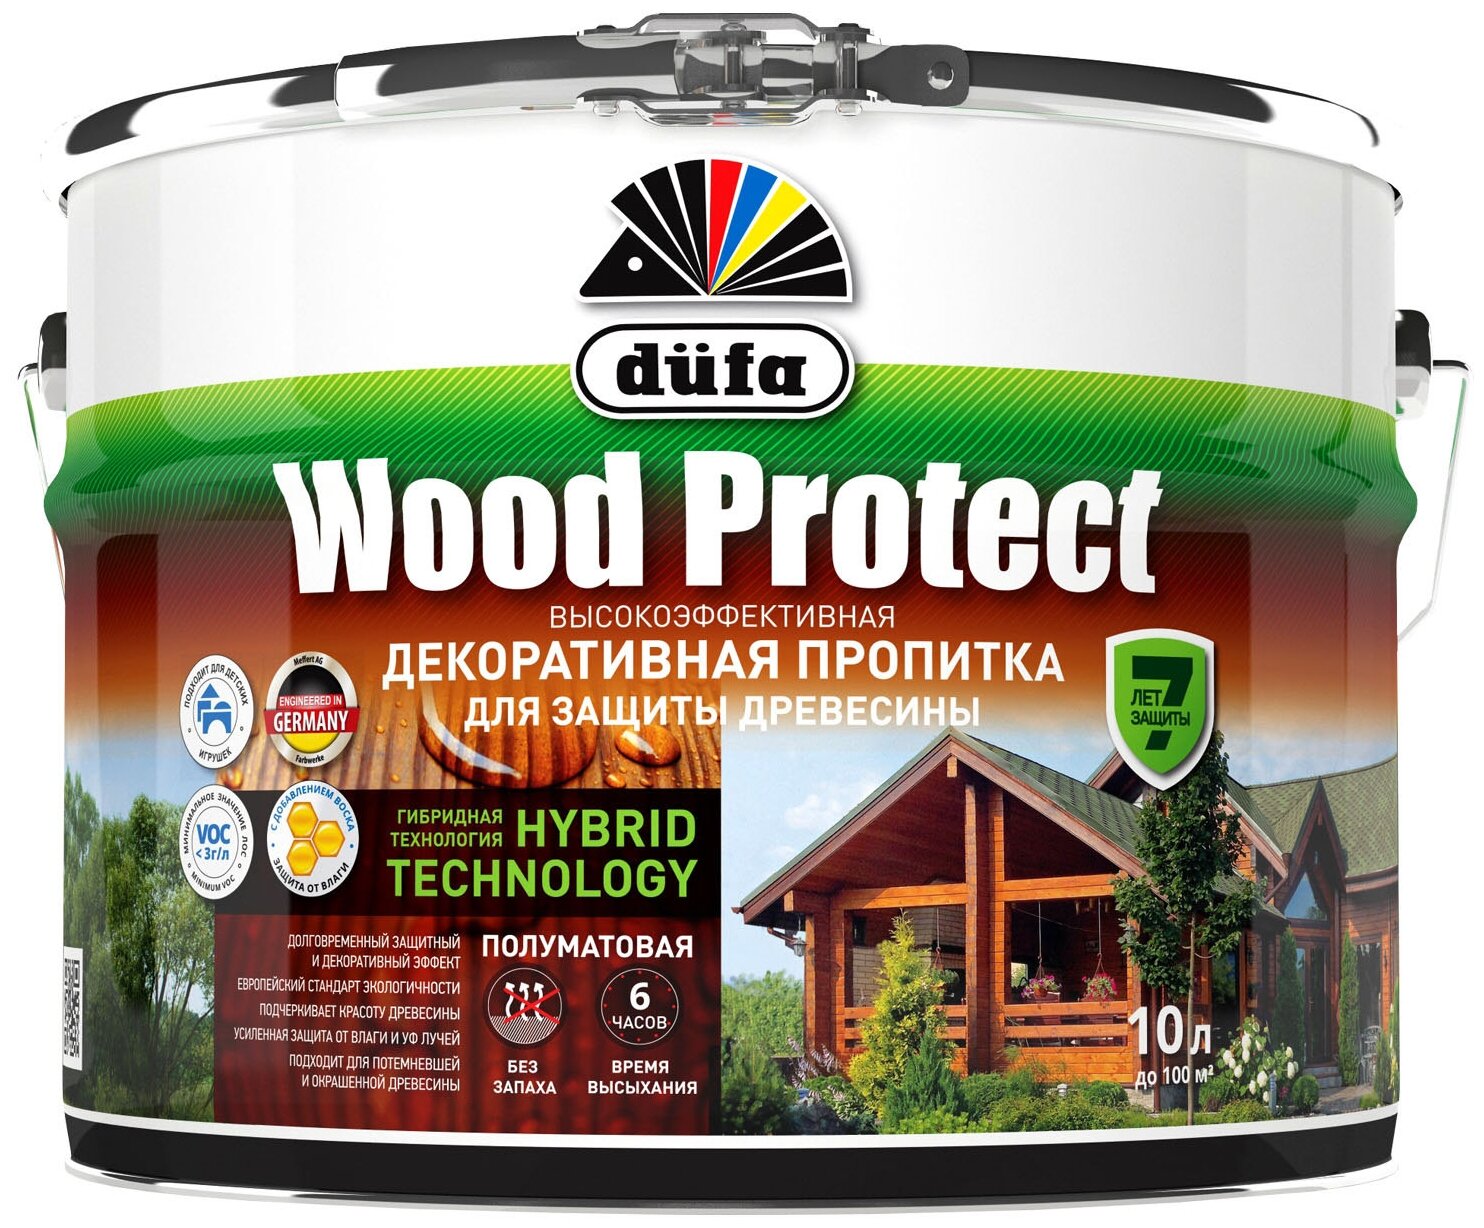 Dufa пропитка Wood Protect